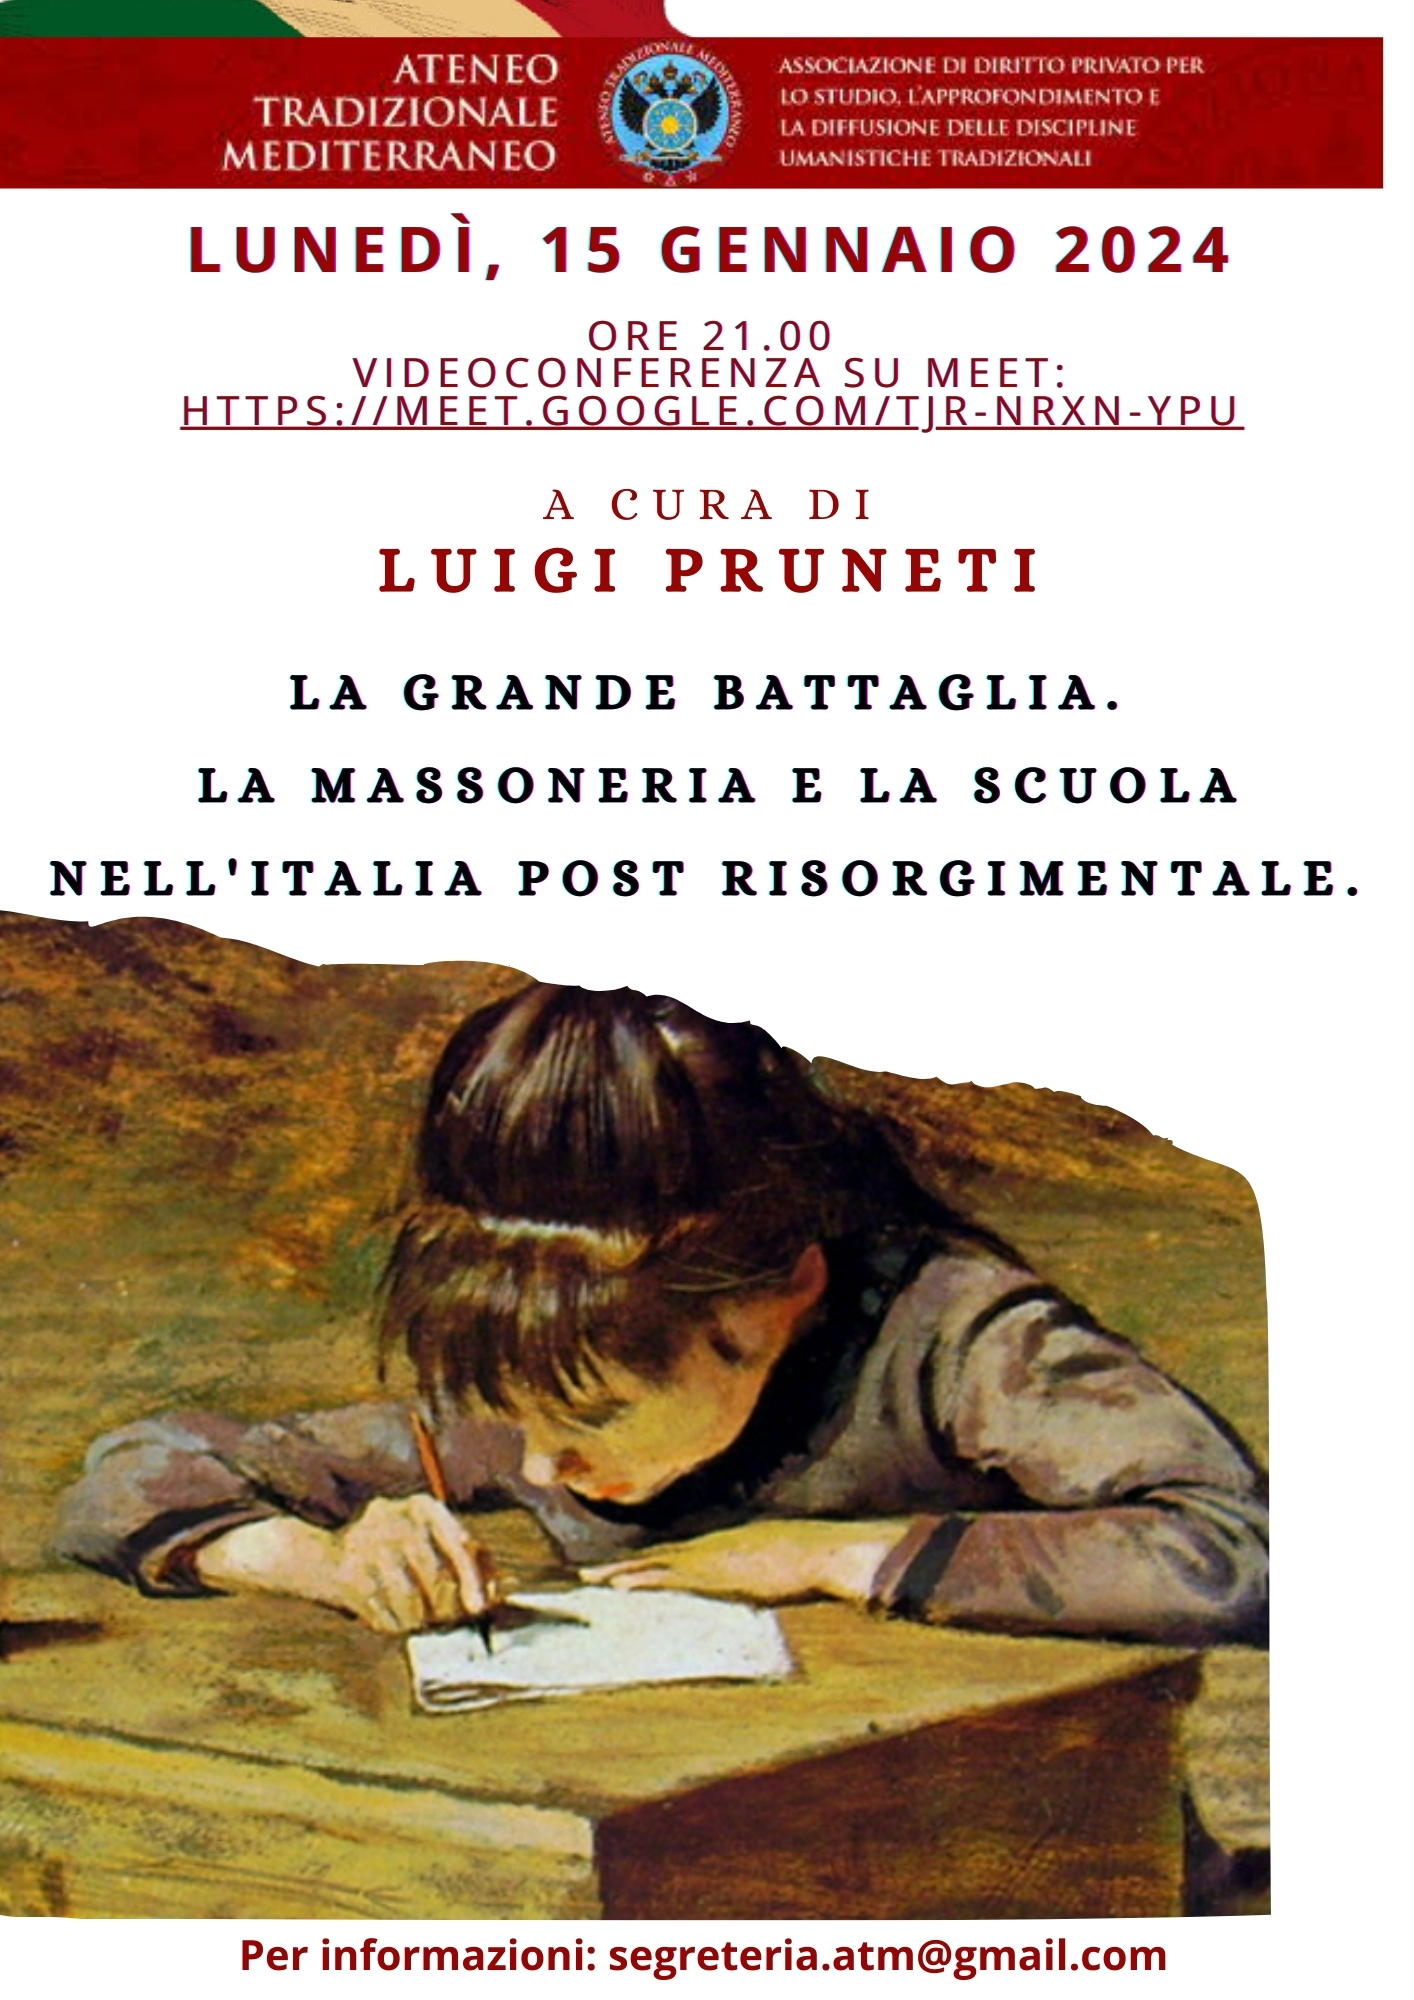 Videoconferenza_La Massoneria e la scuola_nel periodo post risorgimentale_Luigi Pruneti